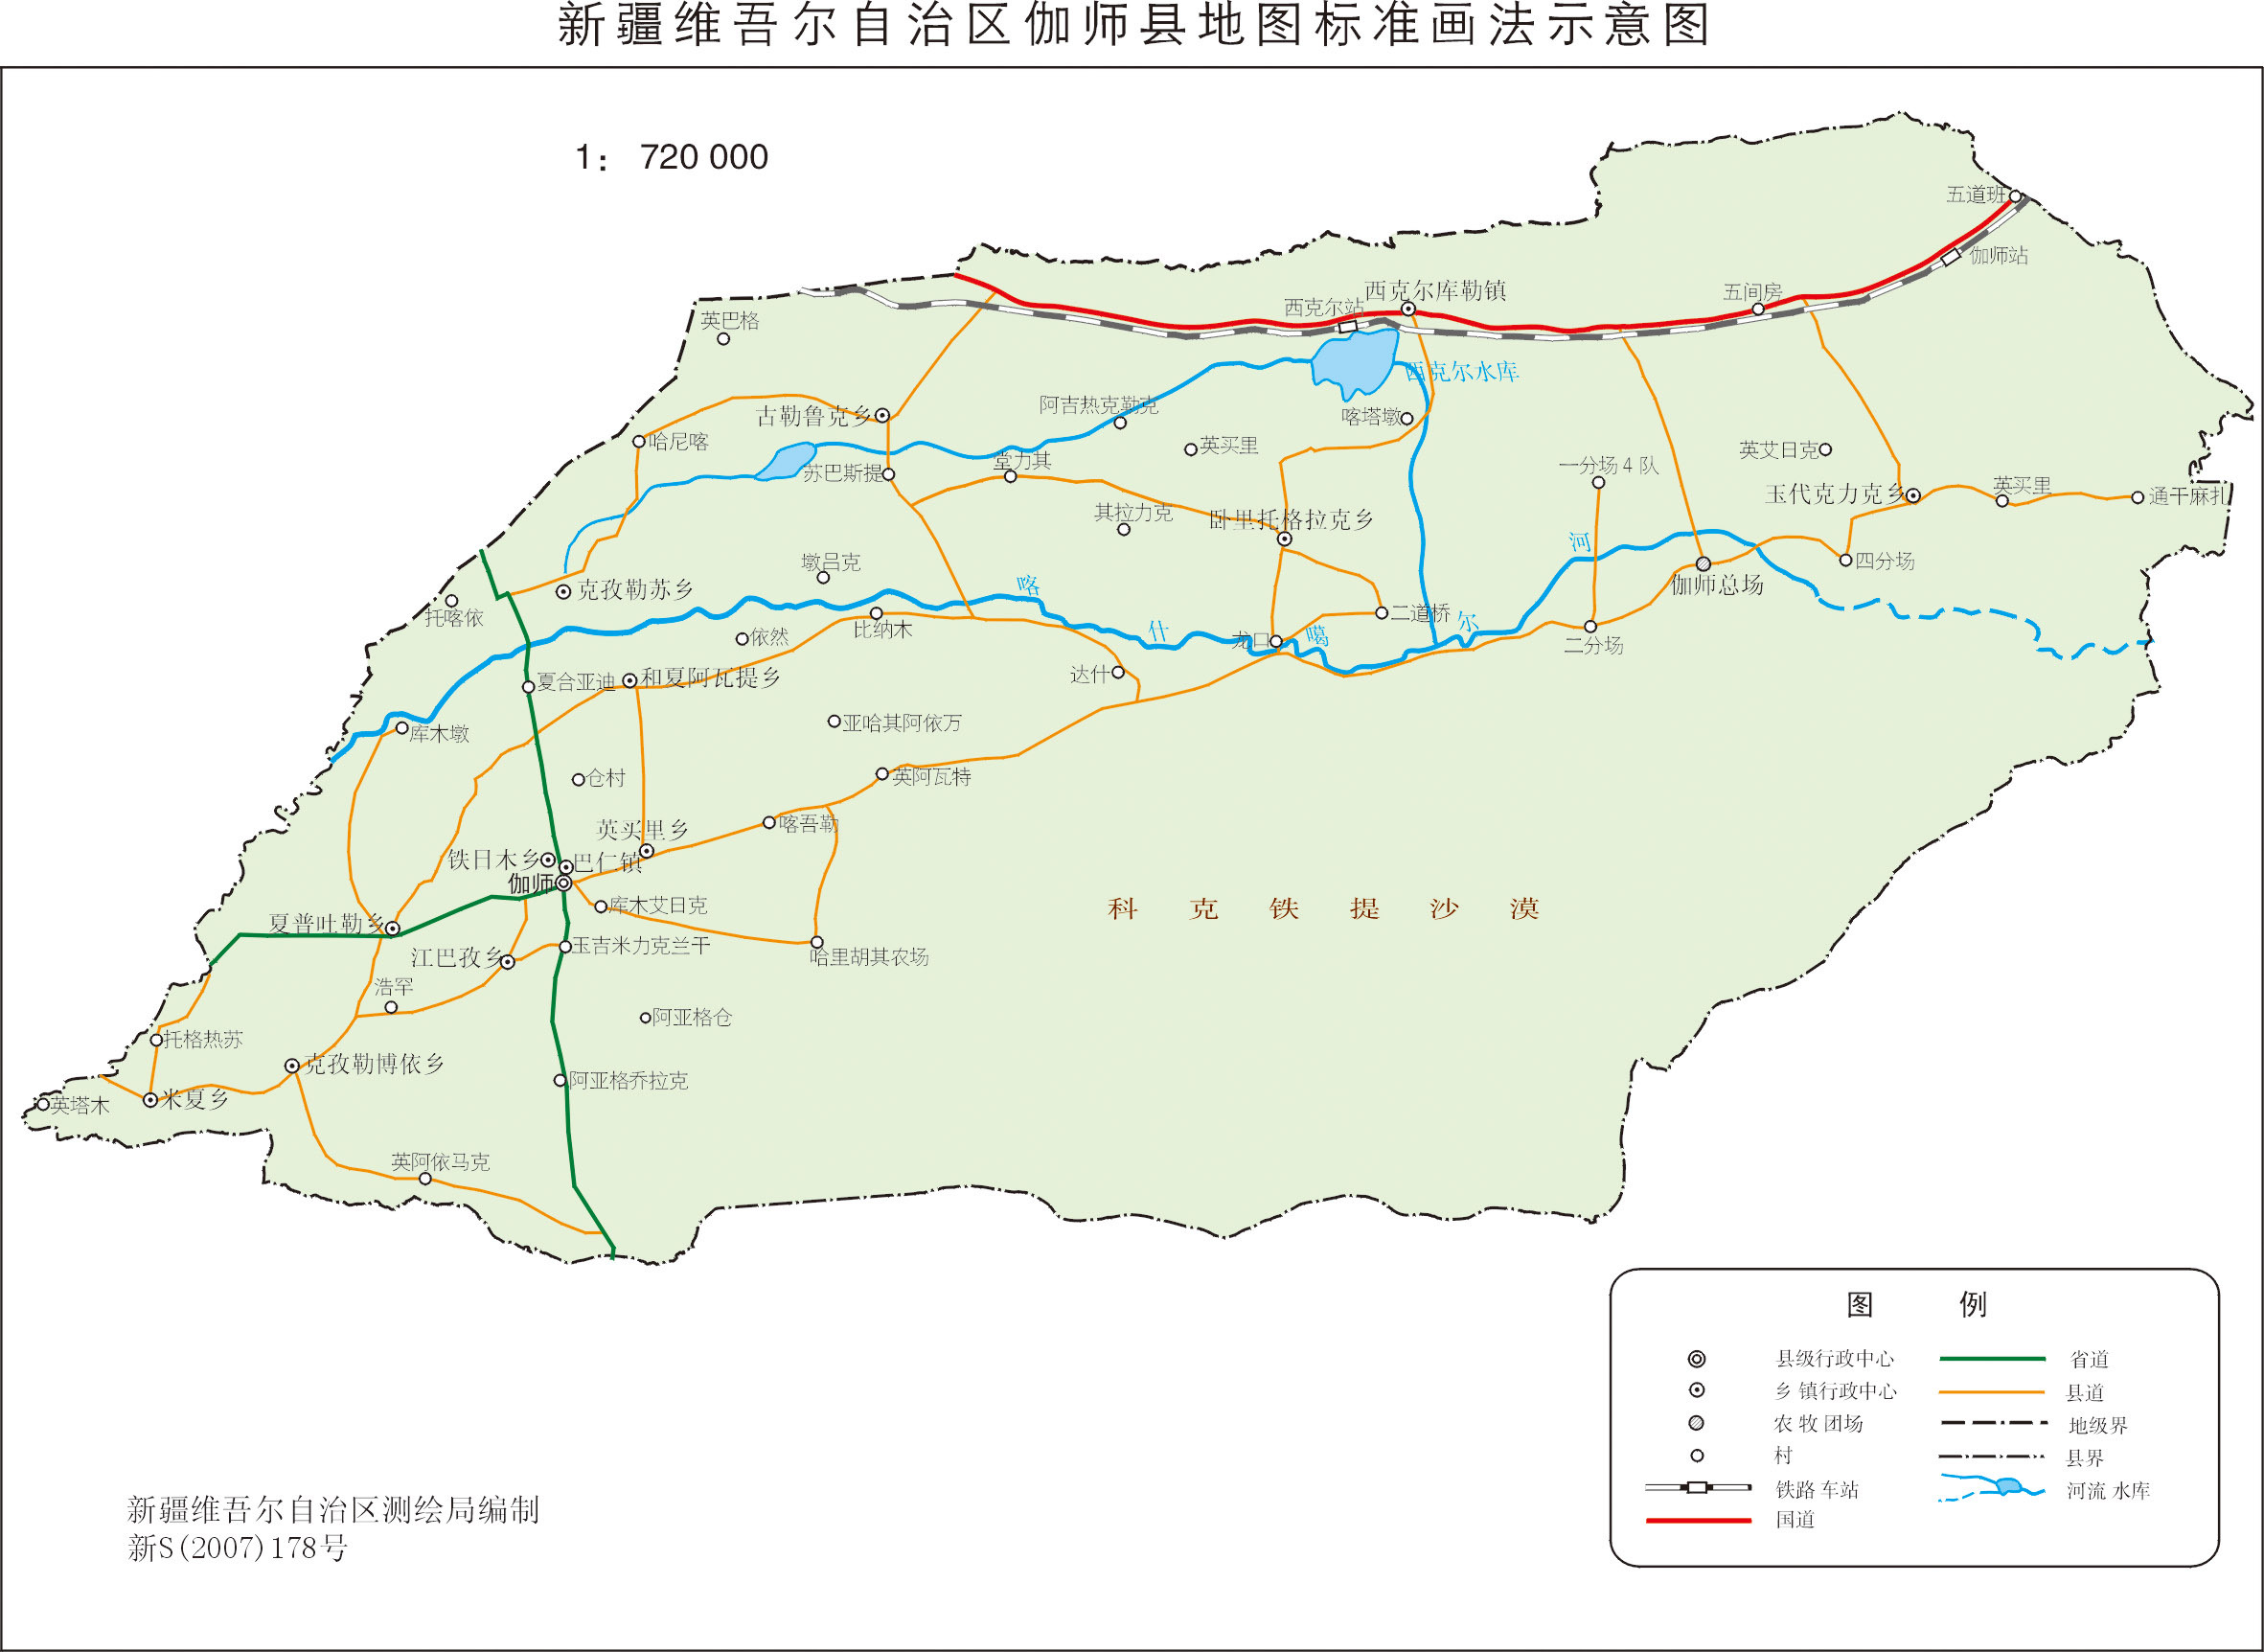 伽师县(行政区划)伽师县隶属新疆维吾尔自治区喀什地区,维吾尔语称"